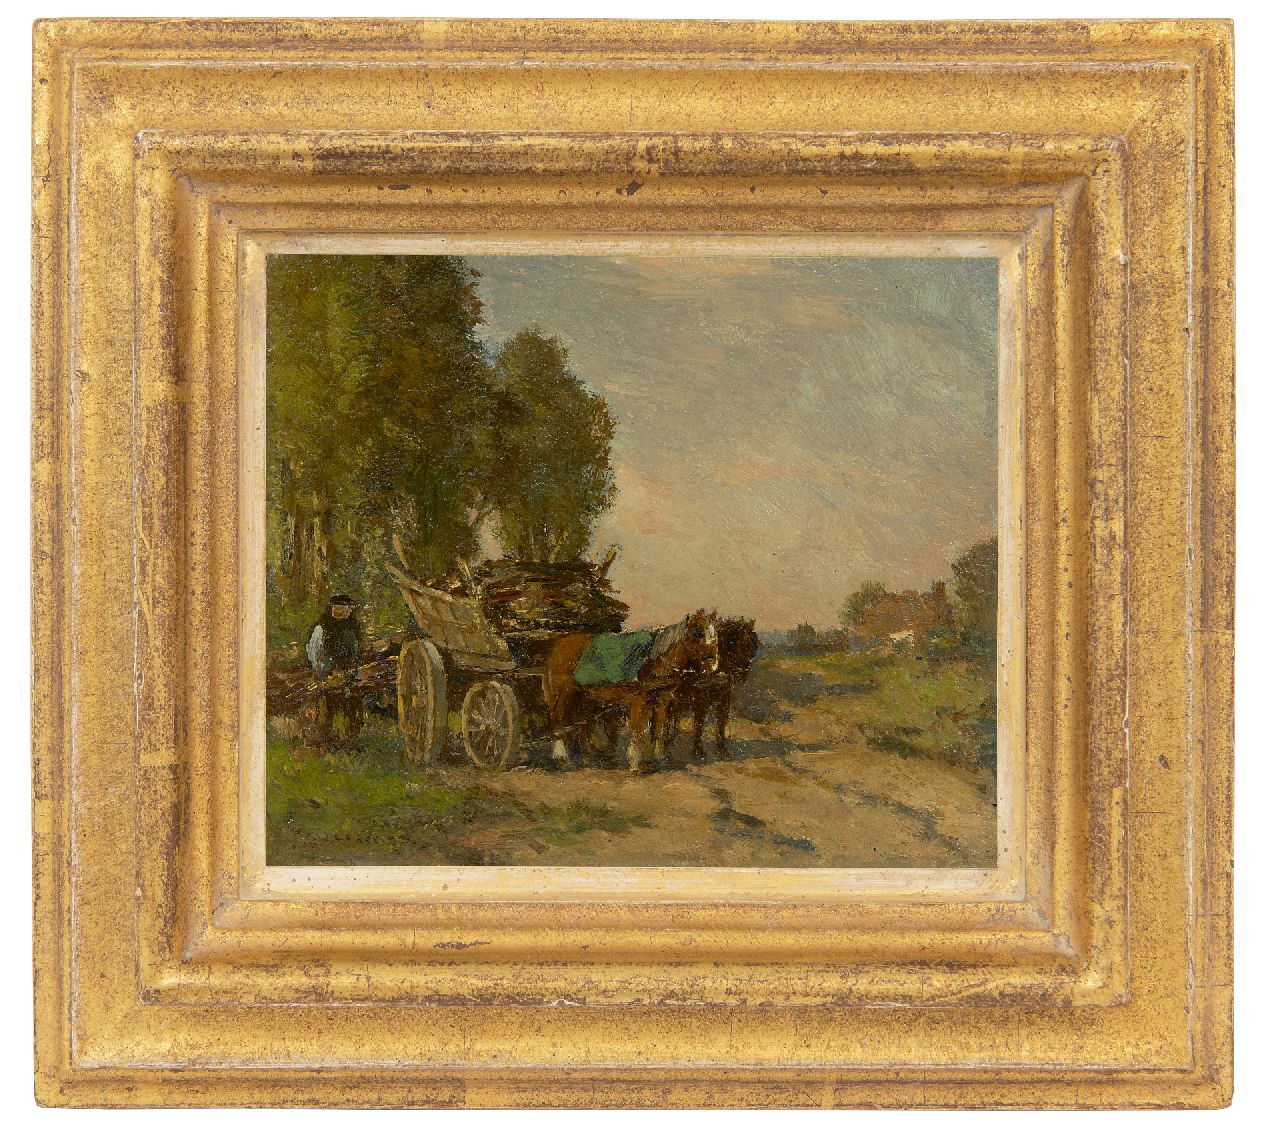 Akkeringa J.E.H.  | 'Johannes Evert' Hendrik Akkeringa | Schilderijen te koop aangeboden | Houtkar aan de bosrand, olieverf op paneel 13,5 x 15,8 cm, gesigneerd linksonder